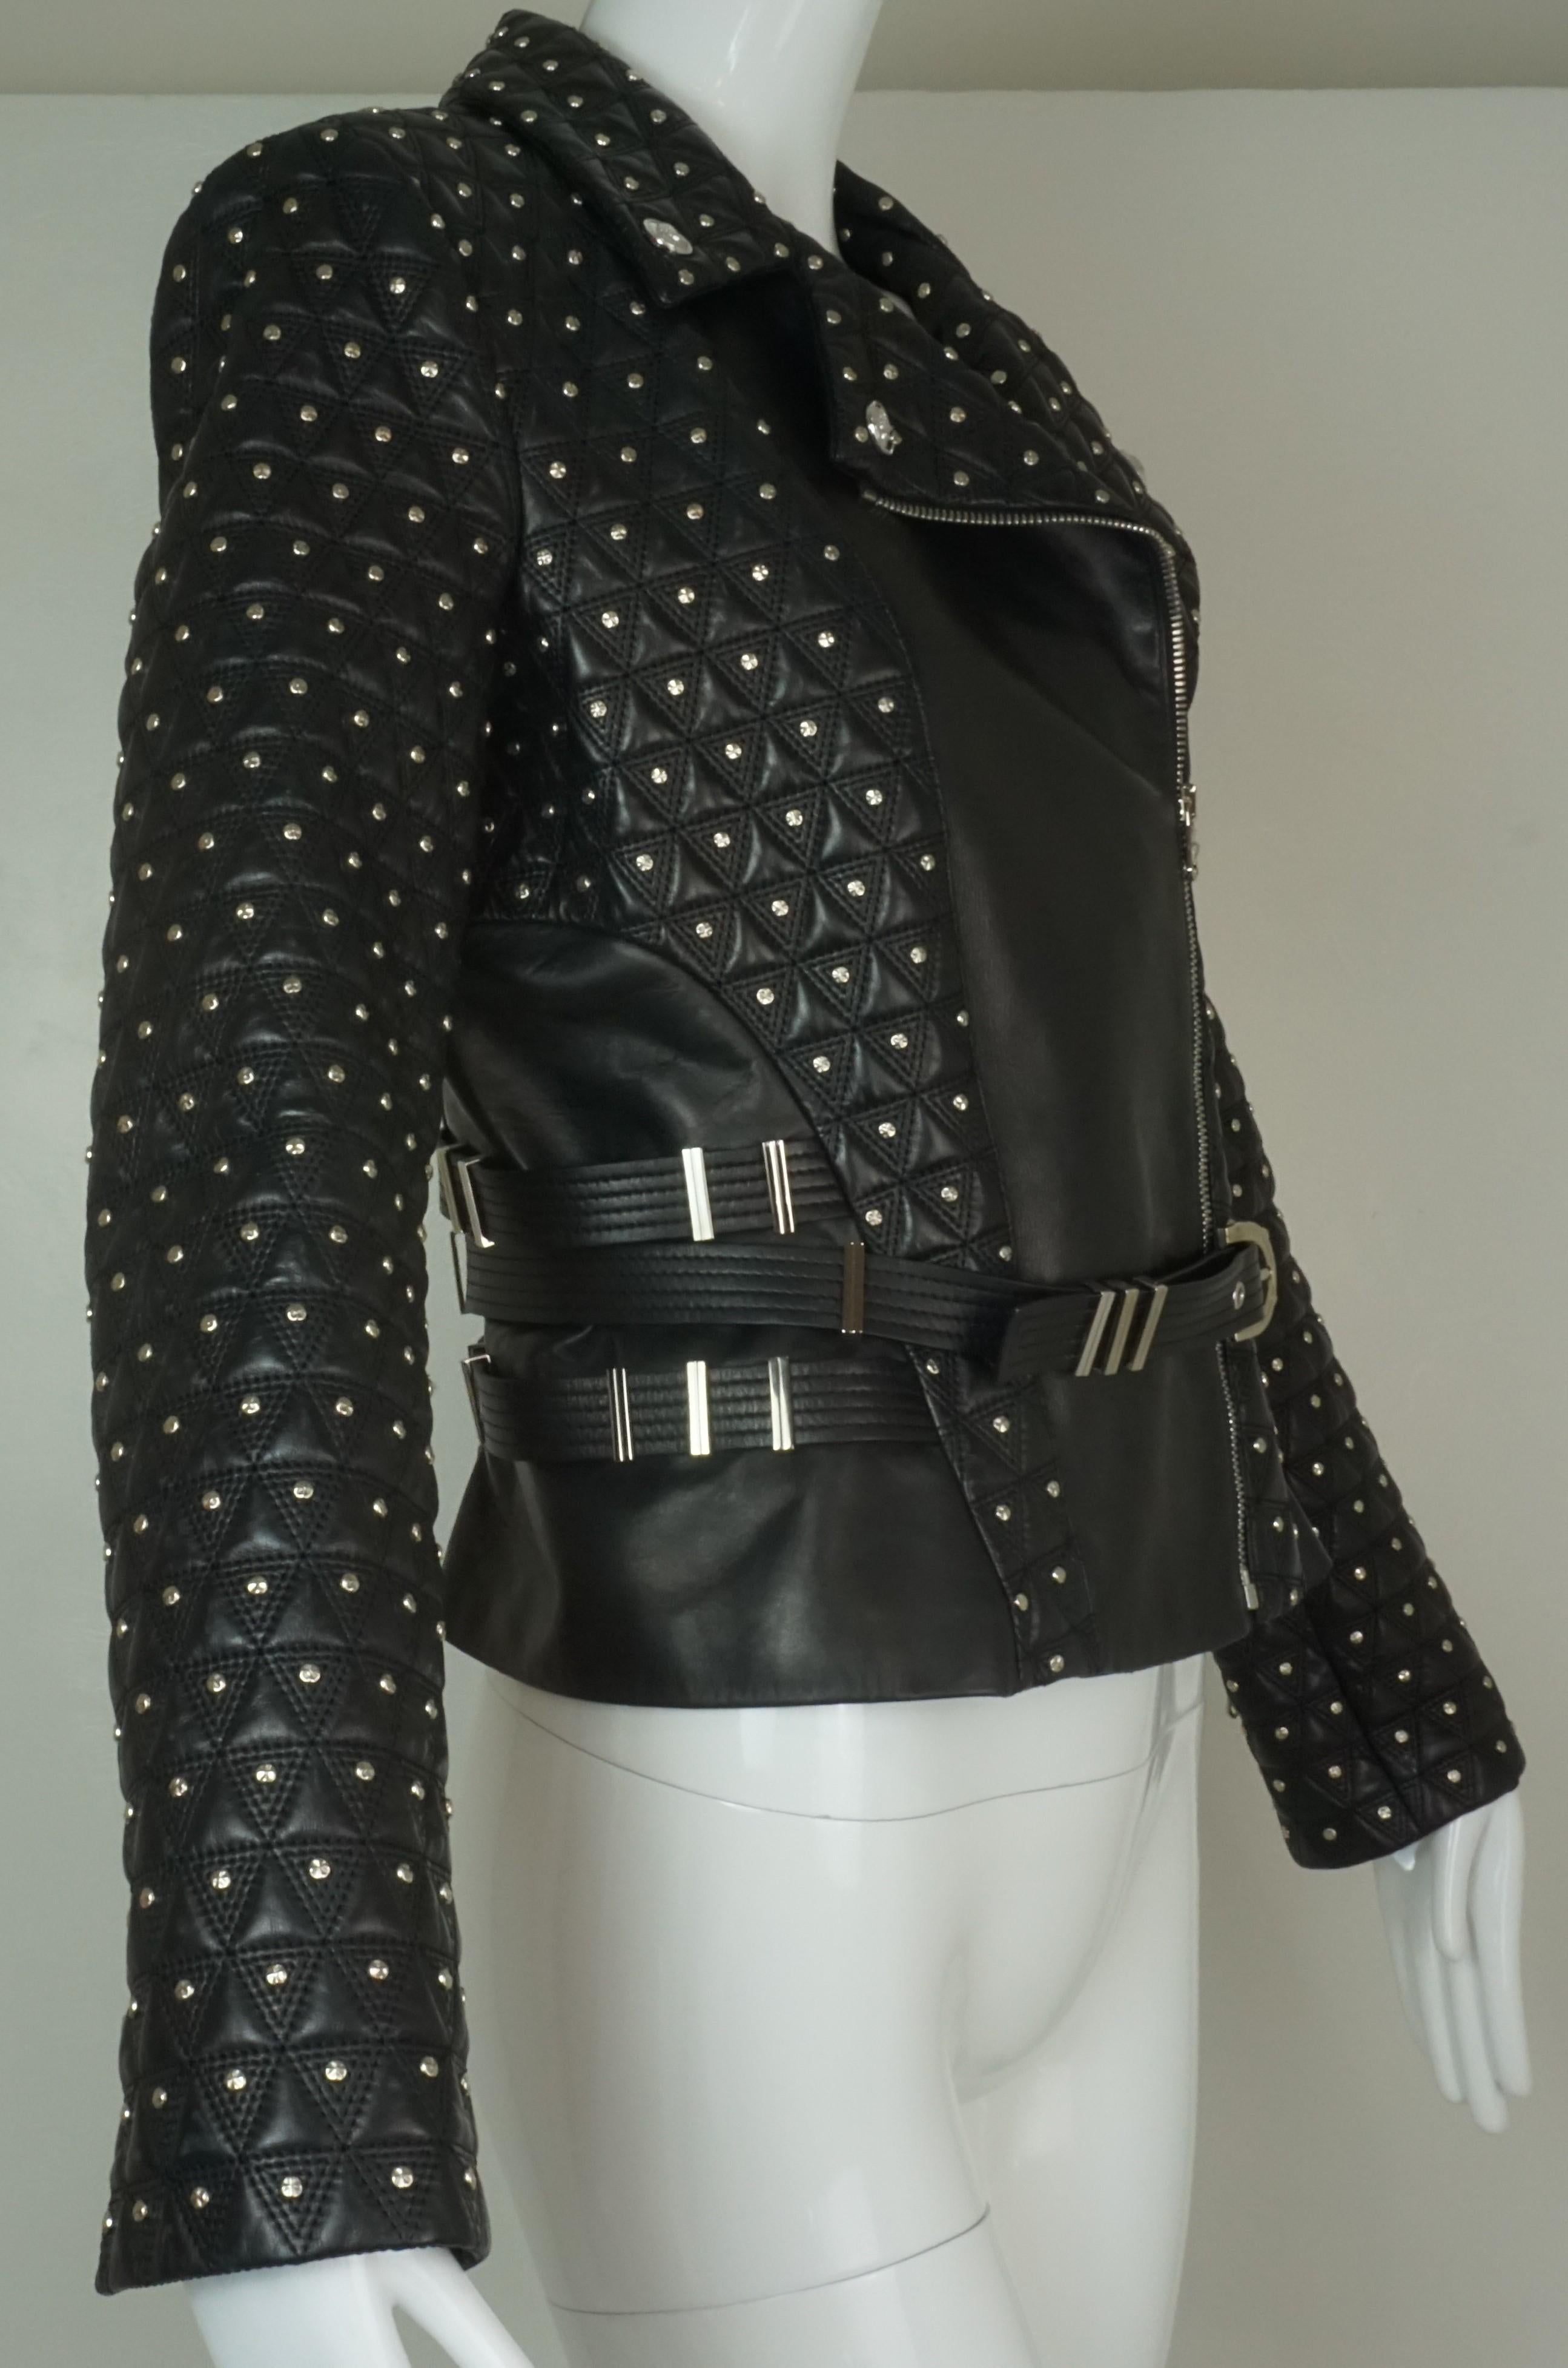 Versace Black Studded Leather Biker Jacket w/ Belt and Medusa Buttons For Sale 7